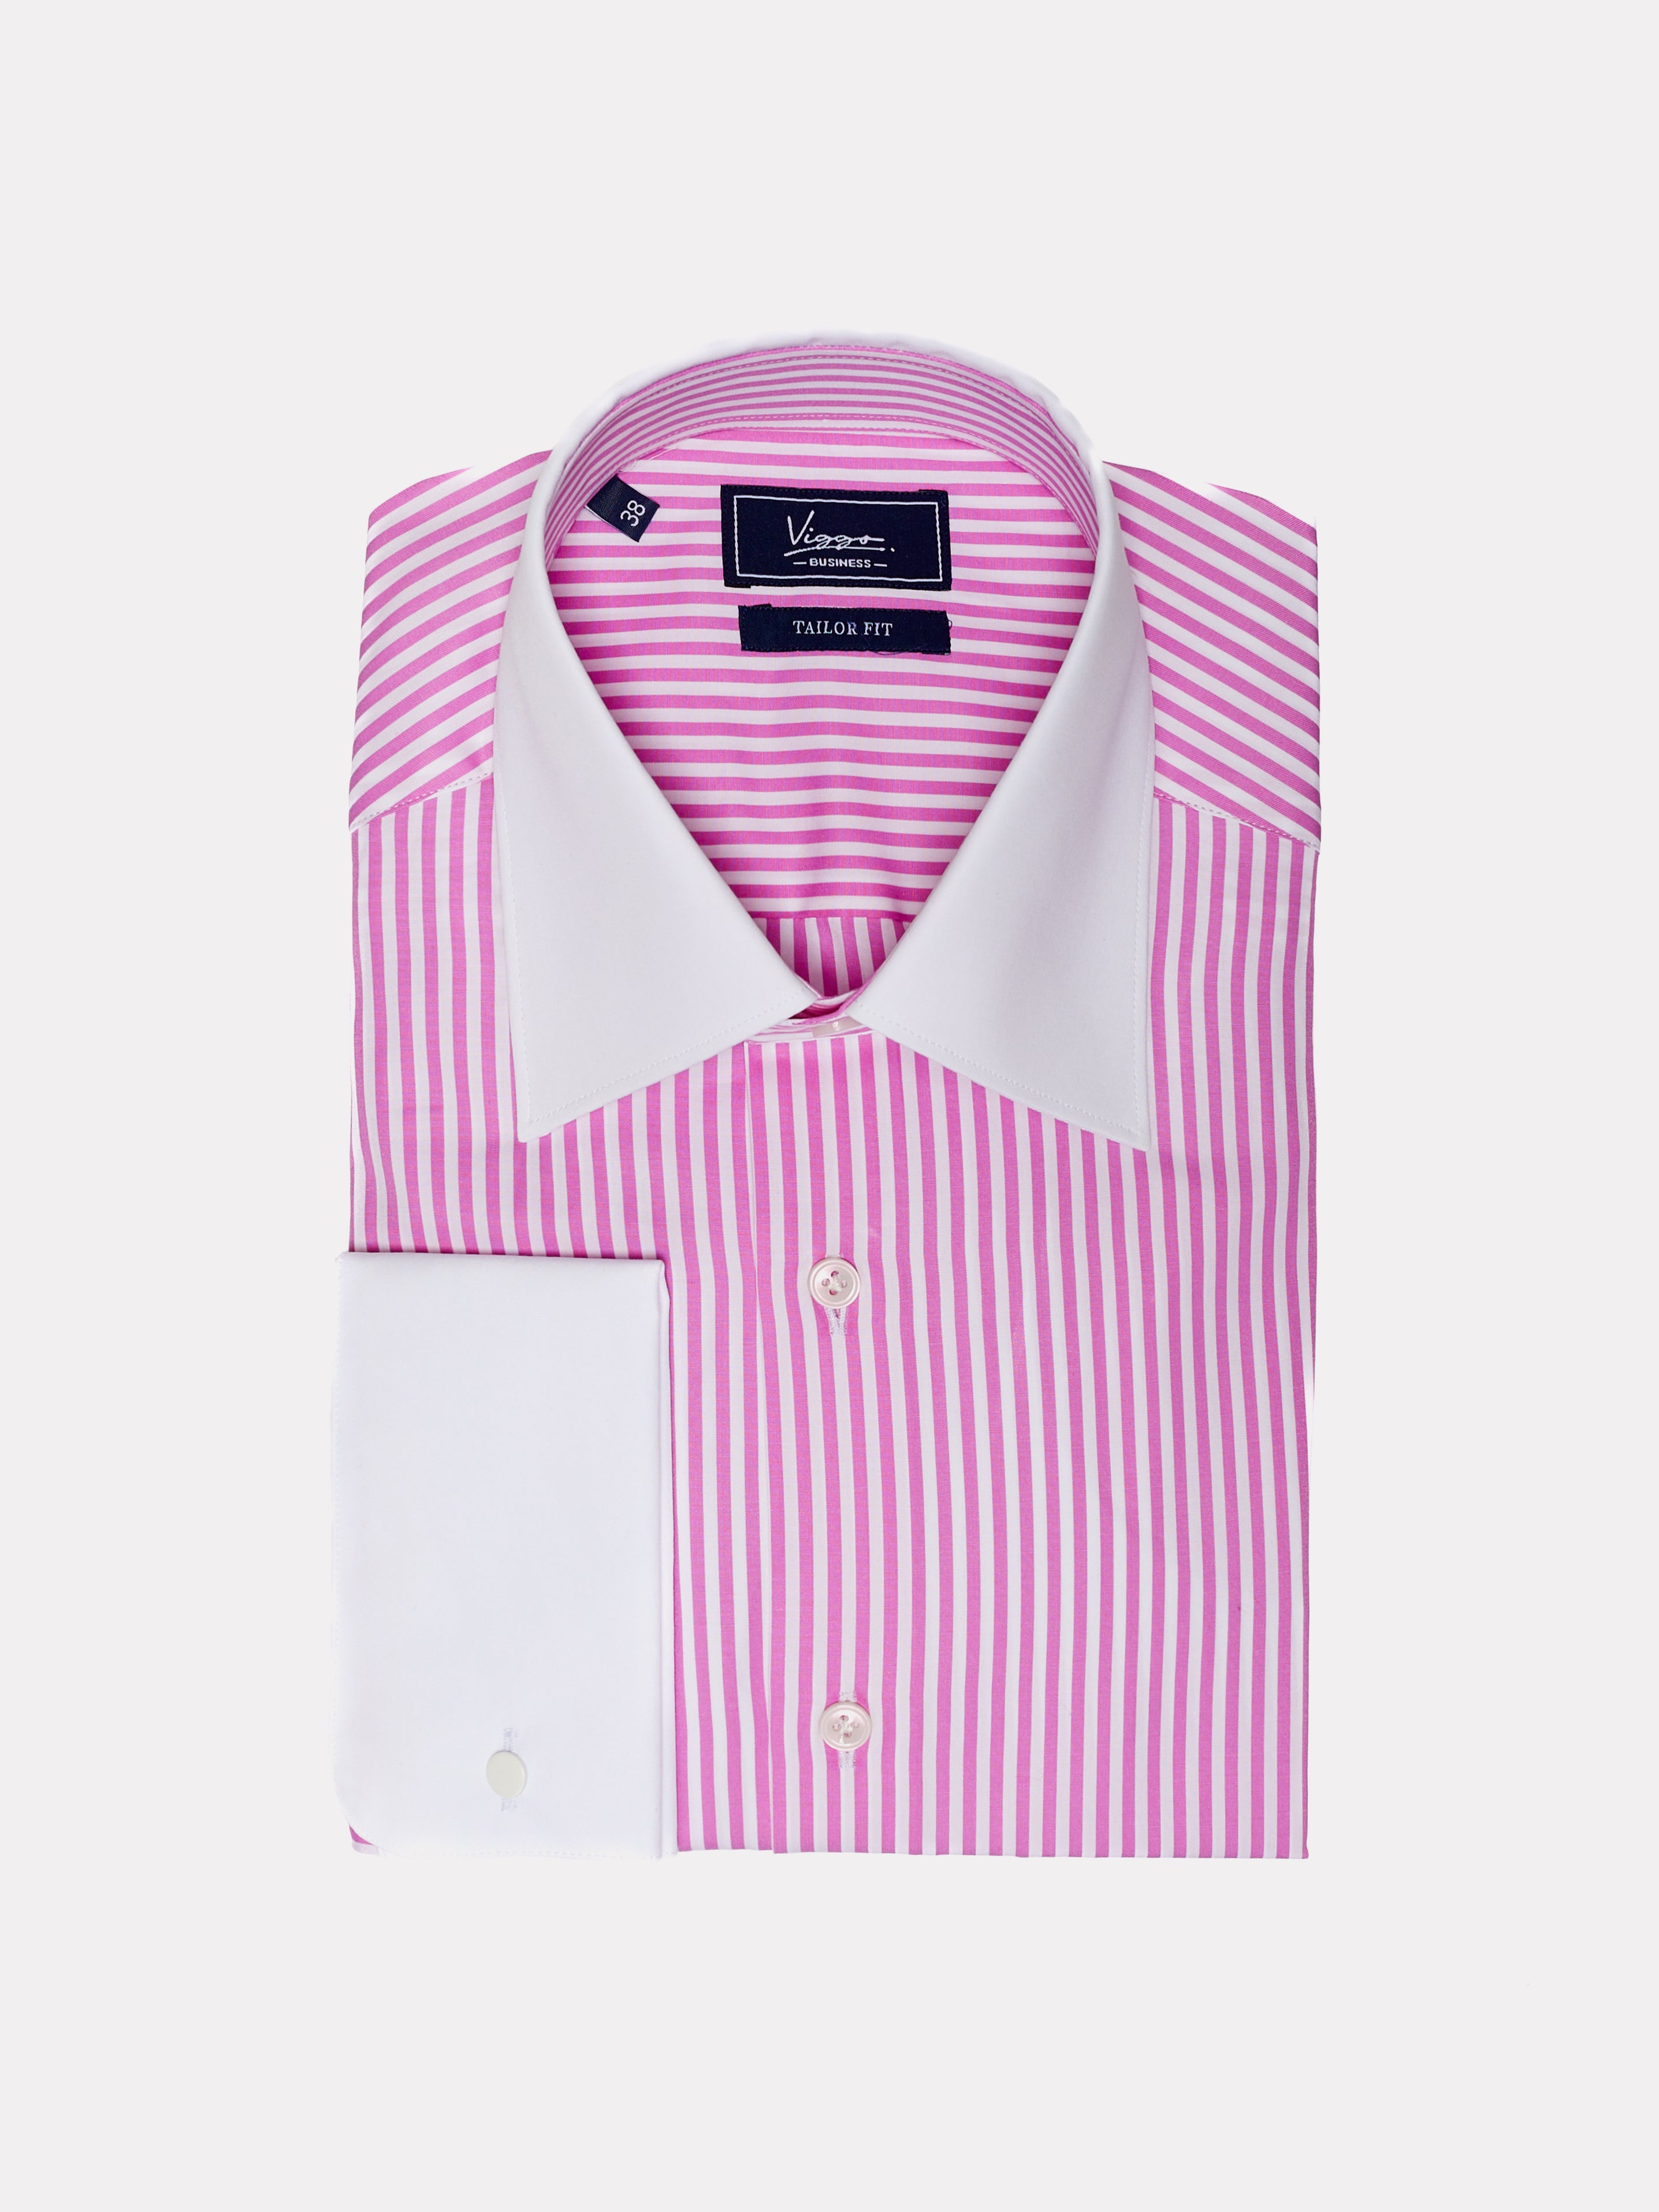 Camicia bianca a righe rosa, polsini con bottone